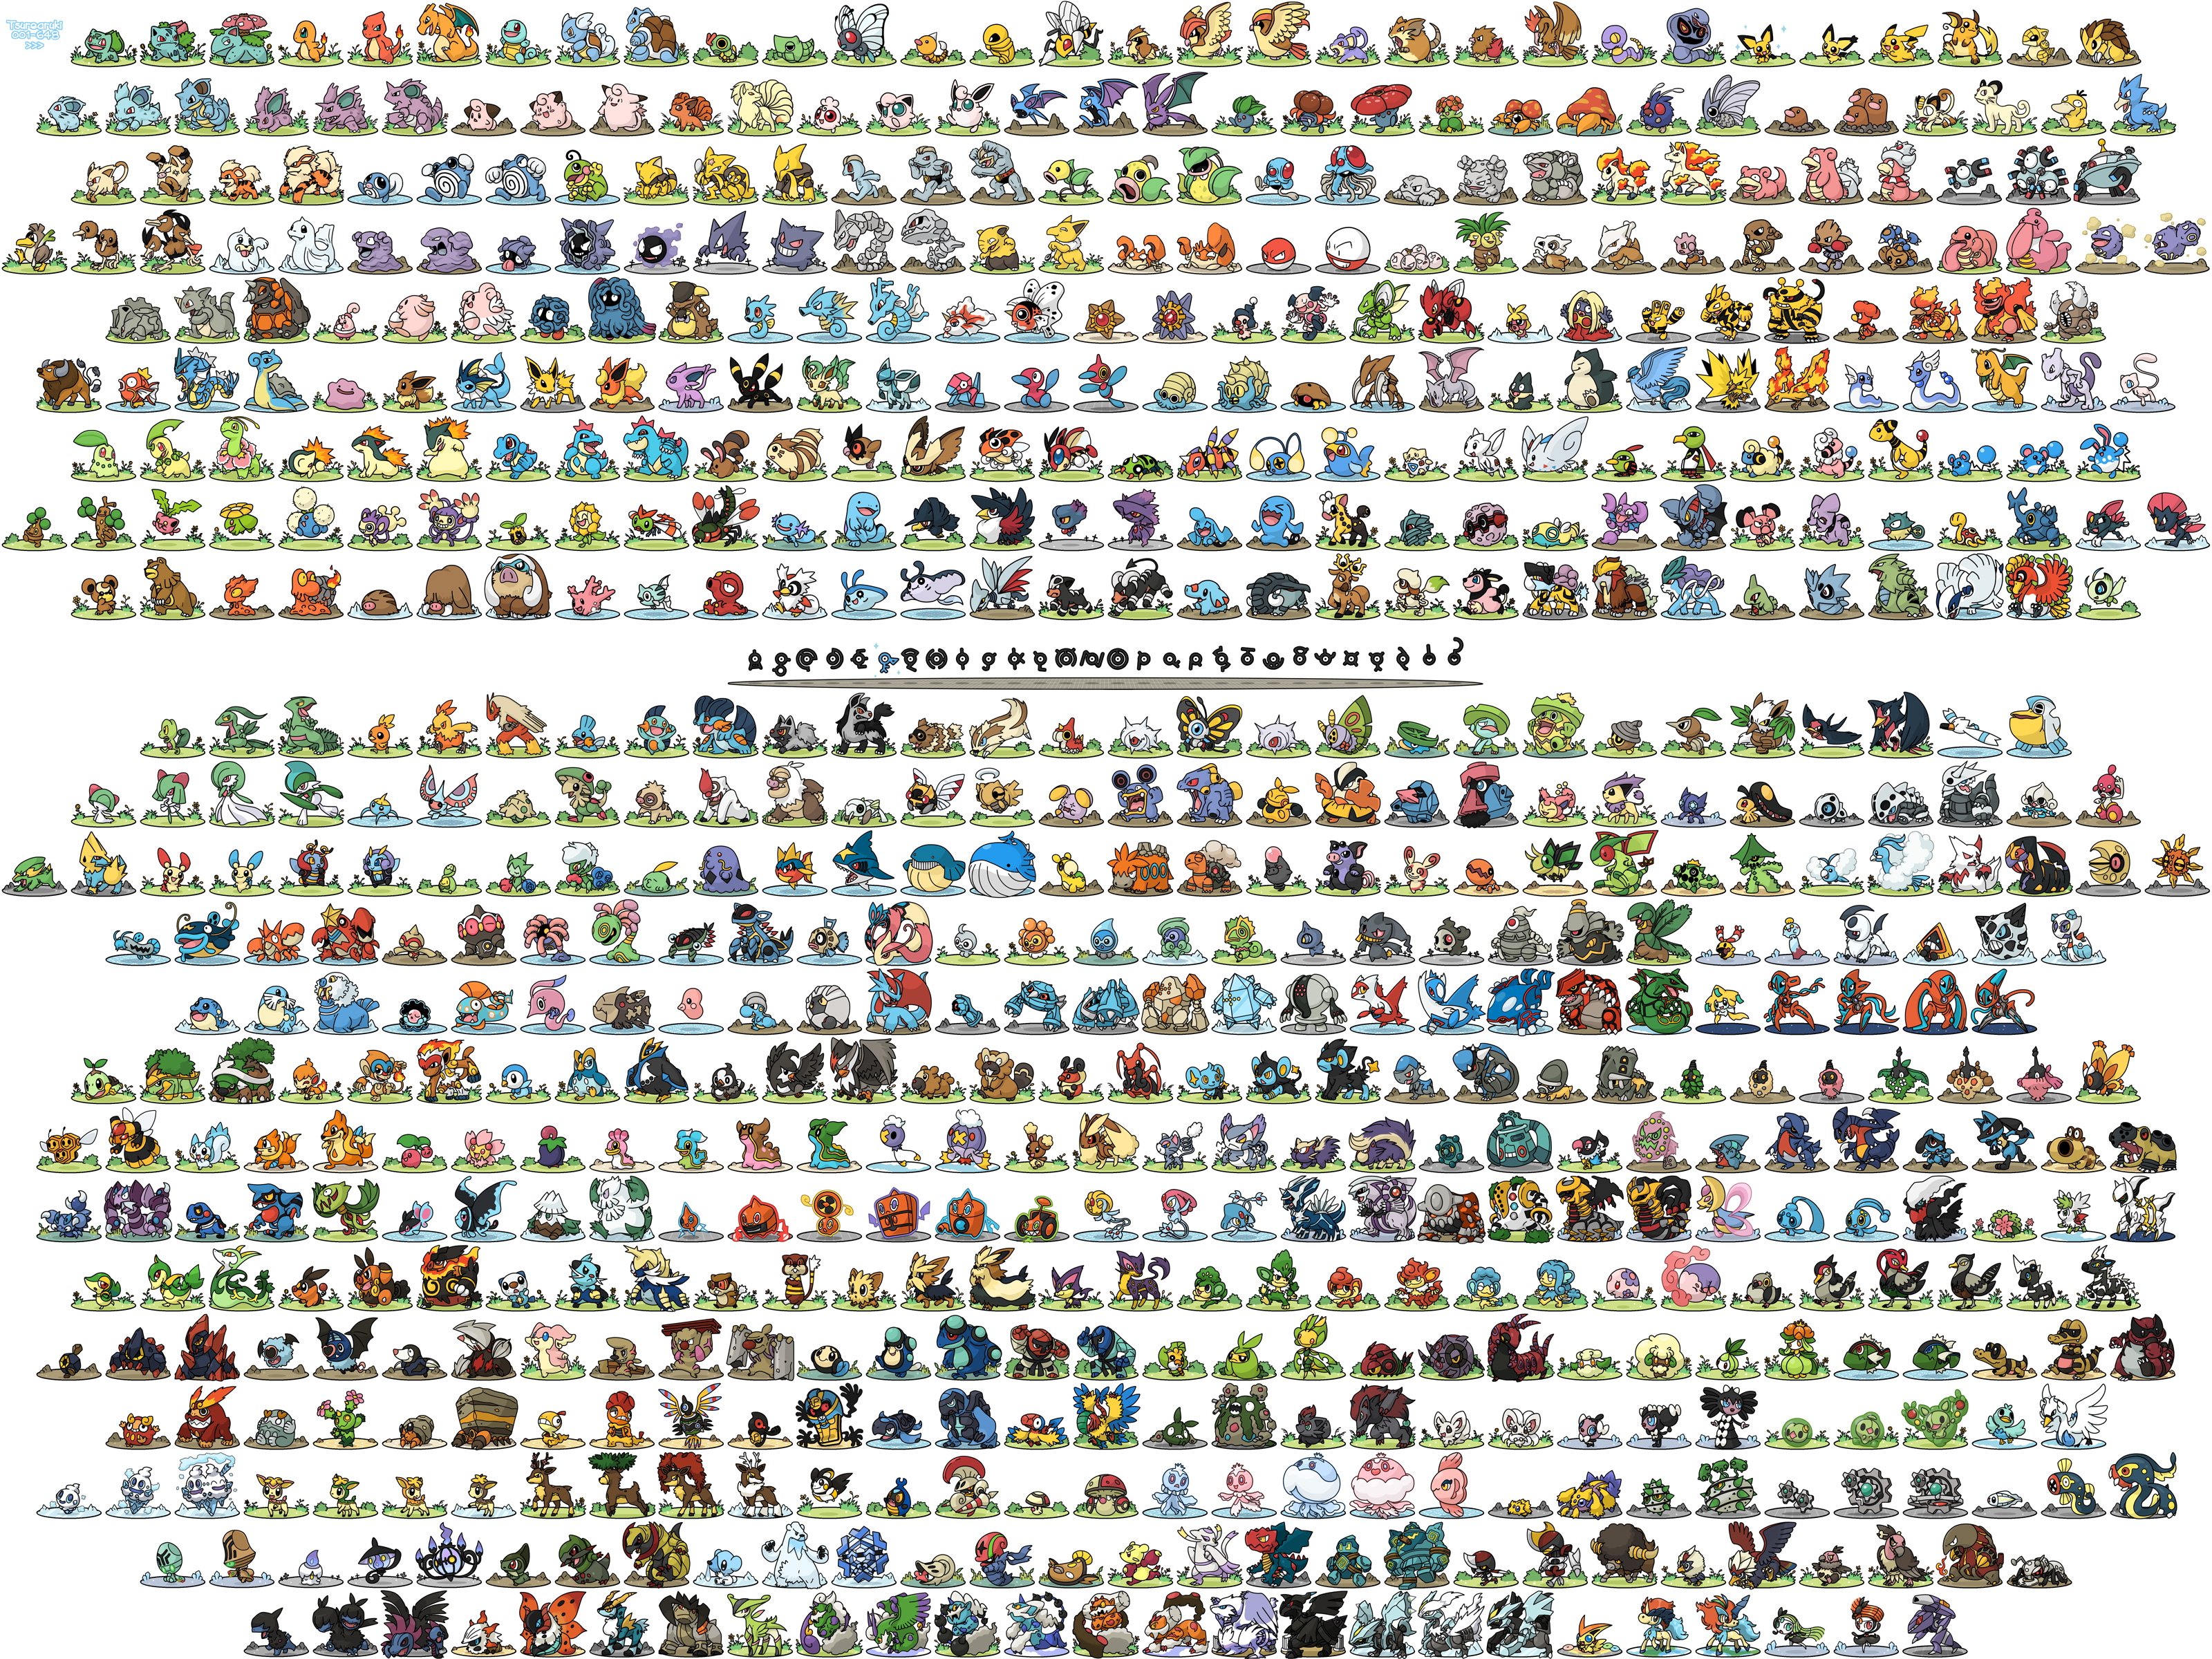 269380 descargar fondo de pantalla animado, pokémon, abomasnow (pokémon), abra (pokémon), absol (pokémon), accelgor (pokémon), aerodáctilo (pokémon), agron (pokémon), aipom (pokémon), alakazam (pokémon), alomomola (pokémon), altaria (pokémon), amoonguss (pokémon), ampharos (pokémon), anorith (pokémon), arbok (pokémon), arcanine (pokémon), arceus (pokémon), archen (pokémon), archeops (pokémon), ariados (pokémon), armaldo (pokémon), aron (pokémon), articuno (pokémon), audino (pokémon), axew (pokémon), azelf (pokémon), azumaril (pokémon), azurill (pokémon), bagon (pokémon), baltoy (pokémon), banette (pokémon), barboach (pokémon), basculino (pokémon), bastiodón (pokémon), bayleef (pokémon), bártico (pokémon), bella mosca (pokémon), beedrill (pokémon), beeheyem (pokémon), beldum (pokémon), bellosom (pokémon), bellsprout (pokémon), bibarel (pokémon), bidoof (pokémon), bisharp (pokémon), blastoise (pokémon), blaziken (pokémon), blissey (pokémon), blitzle (pokémon), boldore (pokémon), bonsly (pokémon), bouffalant (pokémon), braviary (pokémon), breloom (pokémon), bronzong (pokémon), bronzor (pokémon), budew (pokémon), buizel (pokémon), bulbasaur (pokémon), buneary (pokémon), burmy (pokémon), butterfree (pokémon), cacnea (pokémon), cacturne (pokémon), camerupto (pokémon), carnivino (pokémon), carracosta (pokémon), carvanha (pokémon), cascoon (pokémon), castform (pokémon), caterpie (pokémon), celebi (pokémon), chandelure (pokémon), chansey (pokémon), charizard (pokémon), charmander (pokémon), charmeleon (pokémon), chatot (pokémon), cherrim (pokémon), cherubi (pokémon), chikorita (pokémon), chimchar (pokémon), chimecho (pokémon), chinchou (pokémon), chingling (pokémon), cinccino (pokémon), clamperl (pokémon), claydol (pokémon), clefable (pokémon), clefairy (pokémon), cleffa (pokémon), cloyster (pokémon), cobalión (pokémon), cofagrigus (pokémon), combee (pokémon), combusken (pokémon), conkeldurr (pokémon), corphish (pokémon), corsola (pokémon), cottonee (pokémon), cradily (pokémon), cránidos (pokémon), crawdaunt (pokémon), cresselia (pokémon), croagunk (pokémon), crobat (pokémon), croconaw (pokémon), crustle (pokémon), cubchoo (pokémon), cubone (pokémon), cyndaquil (pokémon), cirogonal (pokémon), darkrai (pokémon), darmanitan (pokémon), darumaka (pokémon), deerling (pokémon), deino (pokémon), delcatty (pokémon), delibird (pokémon), deoxys (pokémon), dewgong (pokémon), dewott (pokémon), dialga (pokémon), diglett (pokémon), ídem (pokémon), dodrio (pokémon), doduo (pokémon), donphan (pokémon), dragonair (pokémon), dragonite (pokémon), drapion (pokémon), dratini (pokémon), drifblim (pokémon), drifloon (pokémon), drilbur (pokémon), drowzee (pokémon), druddigon (pokémon), patito (pokémon), dugtrio (pokémon), dunsparce (pokémon), duosion (pokémon), durant (pokémon), dusclops (pokémon), dusknoir (pokémon), duskull (pokémon), dustox (pokémon), dwebble (pokémon), eelekrik (pokémon), elektross (pokémon), eevee (pokémon), ekans (pokémon), electabuzz (pokémon), electivire (pokémon), electrike (pokémon), electrodo (pokémon), elekid (pokémon), elgyem (pokémon), emboar (pokémon), emolga (pokémon), empoleon (pokémon), entei (pokémon), escavalier (pokémon), espeon (pokémon), excadrill (pokémon), exeggcute (pokémon), exeggutor (pokémon), explotar (pokémon), farfetch'd (pokémon), fearow (pokémon), feebas (pokémon), feraligatr (pokémon), ferroseed (pokémon), ferroespino (pokémon), finneon (pokémon), flaaffy (pokémon), flareon (pokémon), flotzel (pokémon), flygon (pokémon), foongus (pokémon), forretress (pokémon), fraxure (pokémon), con volantes (pokémon), froslass (pokémon), furret (pokémon), gabite (pokémon), gallade (pokémon), garbodor (pokémon), garchomp (pokémon), gardevoir (pokémon), gastly (pokémon), gastrodón (pokémon), gavantula (pokémon), genesect (pokémon), gengar (pokémon), geodude (pokémon), gible (pokémon), gigalito (pokémon), girafarig (pokémon), glaceon (pokémon), glalie (pokémon), glameow (pokémon), gligar (pokémon), gliscor (pokémon), penumbra (pokémon), golbat (pokémon), dorado (pokémon), golduck (pokémon), golem (pokémon), golet (pokémon), golurk (pokémon), gorebyss (pokémon), gothita (pokémon), gothitelle (pokémon), gothorita (pokémon), granbull (pokémon), graveler (pokémon), grimer (pokémon), grotle (pokémon), groudon (pokémon), grovyle (pokémon), growlithe (pokémon), gruñón (pokémon), gulpin (pokémon), gurdurr (pokémon), gyarados (pokémon), feliz (pokémon), hariyama (pokémon), haunter (pokémon), haxorus (pokémon), heatmor (pokémon), heatran (pokémon), heracross (pokémon), herdier (pokémon), hipopótamos (pokémon), hippowdon (pokémon), hitmonchan (pokémon), hitmonlee (pokémon), hitmontop (pokémon), honchkrow (pokémon), hoohoot (pokémon), hoppip (pokémon), horsea (pokémon), houndom (pokémon), houndour (pokémon), ho oh (pokémon), cola de caza (pokémon), hydreigon (pokémon), hipno (pokémon), igglybuff (pokémon), illumise (pokémon), infernape (pokémon), ivysaur (pokémon), gelatina (pokémon), jigglypuff (pokémon), jirachi (pokémon), jolteon (pokémon), joltik (pokémon), jumpluff (pokémon), jynx (pokémon), kabuto (pokémon), kabutops (pokémon), kadabra (pokémon), kakuna (pokémon), karrablast (pokémon), kecleon (pokémon), keldeo (pokémon), kingdra (pokémon), kingler (pokémon), kirlia (pokémon), klang (pokémon), klink (pokémon), klinklang (pokémon), koffing (pokémon), krabby (pokémon), kricketot (pokémon), kricketune (pokémon), krokorok (pokémon), krookodile (pokémon), kyogre (pokémon), kyurem (pokémon), lairon (pokémon), lampent (pokémon), lanturn (pokémon), lapras (pokémon), larvesta (pokémon), larvitar (pokémon), latias (pokémon), latios (pokémon), leafeon (pokémon), leavanny (pokémon), ledian (pokémon), ledyba (pokémon), lickitung (pokémon), liepard (pokémon), lileep (pokémon), lilligant (pokémon), lillipup (pokémon), linoone (pokémon), litwick (pokémon), lombre (pokémon), lopunny (pokémon), lotad (pokémon), loudred (pokémon), lucario (pokémon), ludicolo (pokémon), lugia (pokémon), lumineon (pokémon), lunatone (pokémon), luvdisc (pokémon), luxio (pokémon), luxray (pokémon), machamp (pokémon), machoke (pokémon), machop (pokémon), magby (pokémon), magcargo (pokémon), magikarp (pokémon), magmar (pokémon), magmortar (pokémon), magnemita (pokémon), magneton (pokémon), magnezone (pokémon), makuhita (pokémon), manaphy (pokémon), mandibuzz (pokémon), manectric (pokémon), mankey (pokémon), mantine (pokémon), mantyke (pokémon), maracatus (pokémon), mareep (pokémon), marill (pokémon), marowak (pokémon), marshtomp (pokémon), enmascarado (pokémon), mawile (pokémon), medicham (pokémon), meditite (pokémon), meganio (pokémon), meloetta (pokémon), meowth (pokémon), mesprit (pokémon), metagross (pokémon), metang (pokémon), metápodo (pokémon), mew (pokémon), mewtwo (pokémon), mienfoo (pokémon), mienshao (pokémon), mightyena (pokémon), milotic (pokémon), miltank (pokémon), mimo jr (pokémon), minccino (pokémon), minun (pokémon), misdreavus (pokémon), mismagius (pokémon), moltres (pokémon), monferno (pokémon), mothim (pokémon), mr mime (pokémon), mudkip (pokémon), muk (pokémon), munchlax (pokémon), munna (pokémon), murkrow (pokémon), musharna (pokémon), natu (pokémon), nidoking (pokémon), nidoqueen (pokémon), nidoran (pokémon), nidorina (pokémon), nidorino (pokémon), nincada (pokémon), ninetales (pokémon), ninjask (pokémon), noctowl (pokémon), nosepass (pokémon), numel (pokémon), nuzleaf (pokémon), octillería (pokémon), extraño (pokémon), omanite (pokémon), omastar (pokémon), onix (pokémon), oshawott (pokémon), pachirisu (pokémon), palkia (pokémon), palpitad (pokémon), panpour (pokémon), pansage (pokémon), pansear (pokémon), paras (pokémon), parasect (pokémon), patrat (pokémon), peón (pokémon), pelipper (pokémon), persa (pokémon), petilil (pokémon), fanpy (pokémon), phione (pokémon), pichu (pokémon), pidgeot (pokémon), pidgeotto (pokémon), pidgey (pokémon), pidove (pokémon), pignita (pokémon), pikachu, piloswine (pokémon), pineco (pokémon), pinsir (pokémon), piplup (pokémon), plusle (pokémon), politoed (pokémon), poliwag (pokémon), poliwhirl (pokémon), poliwrath (pokémon), ponyta (pokémon), poochyena (pokémon), porygon (pokémon), porygon 2 (pokémon), porygon z (pokémon), primeape (pokémon), prinplup (pokémon), probopass (pokémon), psyduck (pokémon), pupitar (pokémon), purrloin (pokémon), purugly (pokémon), quagsire (pokémon), quilava (pokémon), pez qwil (pokémon), raichu (pokémon), raikou (pokémon), ralts (pokémon), rampardos (pokémon), rapidash (pokémon), raticate (pokémon), rattata (pokémon), rayquaza (pokémon), regice (pokémon), regigigas (pokémon), regirock (pokémon), registeel (pokémon), relicanth (pokémon), remoraid (pokémon), reshiram (pokémon), reuniclus (pokémon), rydon (pokémon), rhyhorn (pokémon), riolu (pokémon), roggenrola (pokémon), roselia (pokémon), roserade (pokémon), rotom (pokémon), rufflet (pokémon), sableye (pokémon), salamence (pokémon), samurott (pokémon), sandile (pokémon), sandshrew (pokémon), sandslash (pokémon), sawk (pokémon), sawsbuck (pokémon), sceptile (pokémon), scizor (pokémon), scolipede (pokémon), scrafty (pokémon), flaco (pokémon), scyther (pokémon), seadra (pokémon), seaking (pokémon), sealeo (pokémon), seedot (pokémon), seel (pokémon), seismitoad (pokémon), centinela (pokémon), serperior (pokémon), servine (pokémon), seviper (pokémon), sewaddle (pokémon), sharpedo (pokémon), shaymin (pokémon), shedinja (pokémon), shelgon (pokémon), shellder (pokémon), shellos (pokémon), casco (pokémon), shieldon (pokémon), shiftry (pokémon), shinx (pokémon), shroomish (pokémon), shuckle (pokémon), shupet (pokémon), sigilifo (pokémon), silcoon (pokémon), simipour (pokémon), simisage (pokémon), simisear (pokémon), skarmory (pokémon), skiploom (pokémon), skity (pokémon), skorupi (pokémon), skuntank (pokémon), saqueo (pokémon), slakoth (pokémon), slowbro (pokémon), slowking (pokémon), lentitud (pokémon), slugma (pokémon), smeargle (pokémon), smoochum (pokémon), sneasel (pokémon), snivy (pokémon), snorlax (pokémon), snorunt (pokémon), snover (pokémon), snubbull (pokémon), solosis (pokémon), solrock (pokémon), spearow (pokémon), spheal (pokémon), spinarak (pokémon), spinda (pokémon), spiritomb (pokémon), spoink (pokémon), squirtle (pokémon), stantler (pokémon), staraptor (pokémon), staravia (pokémon), starly (pokémon), starmie (pokémon), staryu (pokémon), steelix (pokémon), stoutland (pokémon), stunfisk (pokémon), stunky (pokémon), sudowoodo (pokémon), suicune (pokémon), sunflora (pokémon), sunkern (pokémon), surskit (pokémon), swablu (pokémon), swadloon (pokémon), swalot (pokémon), swampert (pokémon), swanna (pokémon), swellow (pokémon), swinub (pokémon), swoobat (pokémon), taillow (pokémon), tangela (pokémon), tangrowth (pokémon), tauros (pokémon), teddiursa (pokémon), tentacool (pokémon), tentacruel (pokémon), tepig (pokémon), terrakion (pokémon), throh (pokémon), timburr (pokémon), tirtouga (pokémon), togekiss (pokémon), togepi (pokémon), togetic (pokémon), torchic (pokémon), torkoal (pokémon), torterra (pokémon), totodile (pokémon), toxicroak (pokémon), tranquill (pokémon), trapinch (pokémon), treecko (pokémon), tropius (pokémon), trubbish (pokémon), turtwig (pokémon), tympole (pokémon), tynamo (pokémon), tiflosión (pokémon), tyranitar (pokémon), tyrogue (pokémon), umbreon (pokémon), unfezant (pokémon), unown (pokémon), ursaring (pokémon), uxie (pokémon), vanillish (pokémon), vanillita (pokémon), vanilluxe (pokémon), vaporeon (pokémon), venipede (pokémon), venomoth (pokémon), venonat (pokémon), venusaur (pokémon), vespiquén (pokémon), vibrava (pokémon), victini (pokémon), victreebel (pokémon), vigoroth (pokémon), vileplume (pokémon), virizion (pokémon), volbeat (pokémon), volcarona (pokémon), voltorb (pokémon), vullaby (pokémon), vulpix (pokémon), wailmer (pokémon), wailord (pokémon), walrein (pokémon), wartortle (pokémon), vigilante (pokémon), weavile (pokémon), weedle (pokémon), campanita (pokémon), weezing (pokémon), whimsicott (pokémon), torbellino (pokémon), whiscash (pokémon), whismur (pokémon), wigglytuff (pokémon), wingull (pokémon), wobbuffet (pokémon), woobat (pokémon), wooper (pokémon), wormadam (pokémon), wurmple (pokémon), wynaut (pokémon), xatu (pokémon), yamask (pokémon), yanma (pokémon), zangoose (pokémon), zapdos (pokémon), zebstrika (pokémon), zekrom (pokémon), zigzagoon (pokémon), zoroark (pokémon), zorua (pokémon), zubat (pokémon), zweilous (pokémon): protectores de pantalla e imágenes gratis